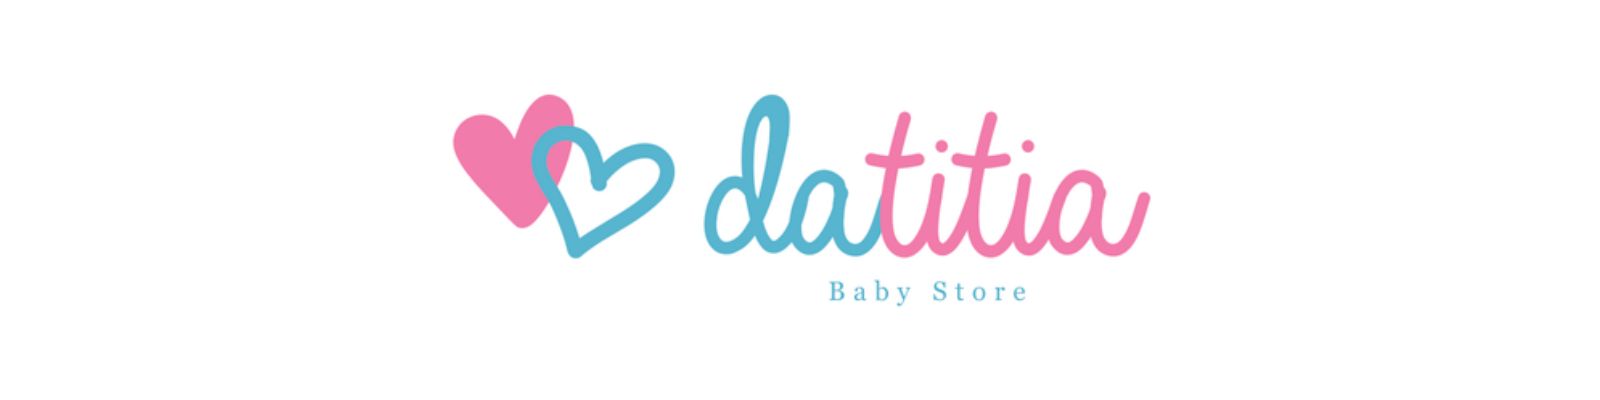 Datitia Baby Store é confiável? Confira conosco!